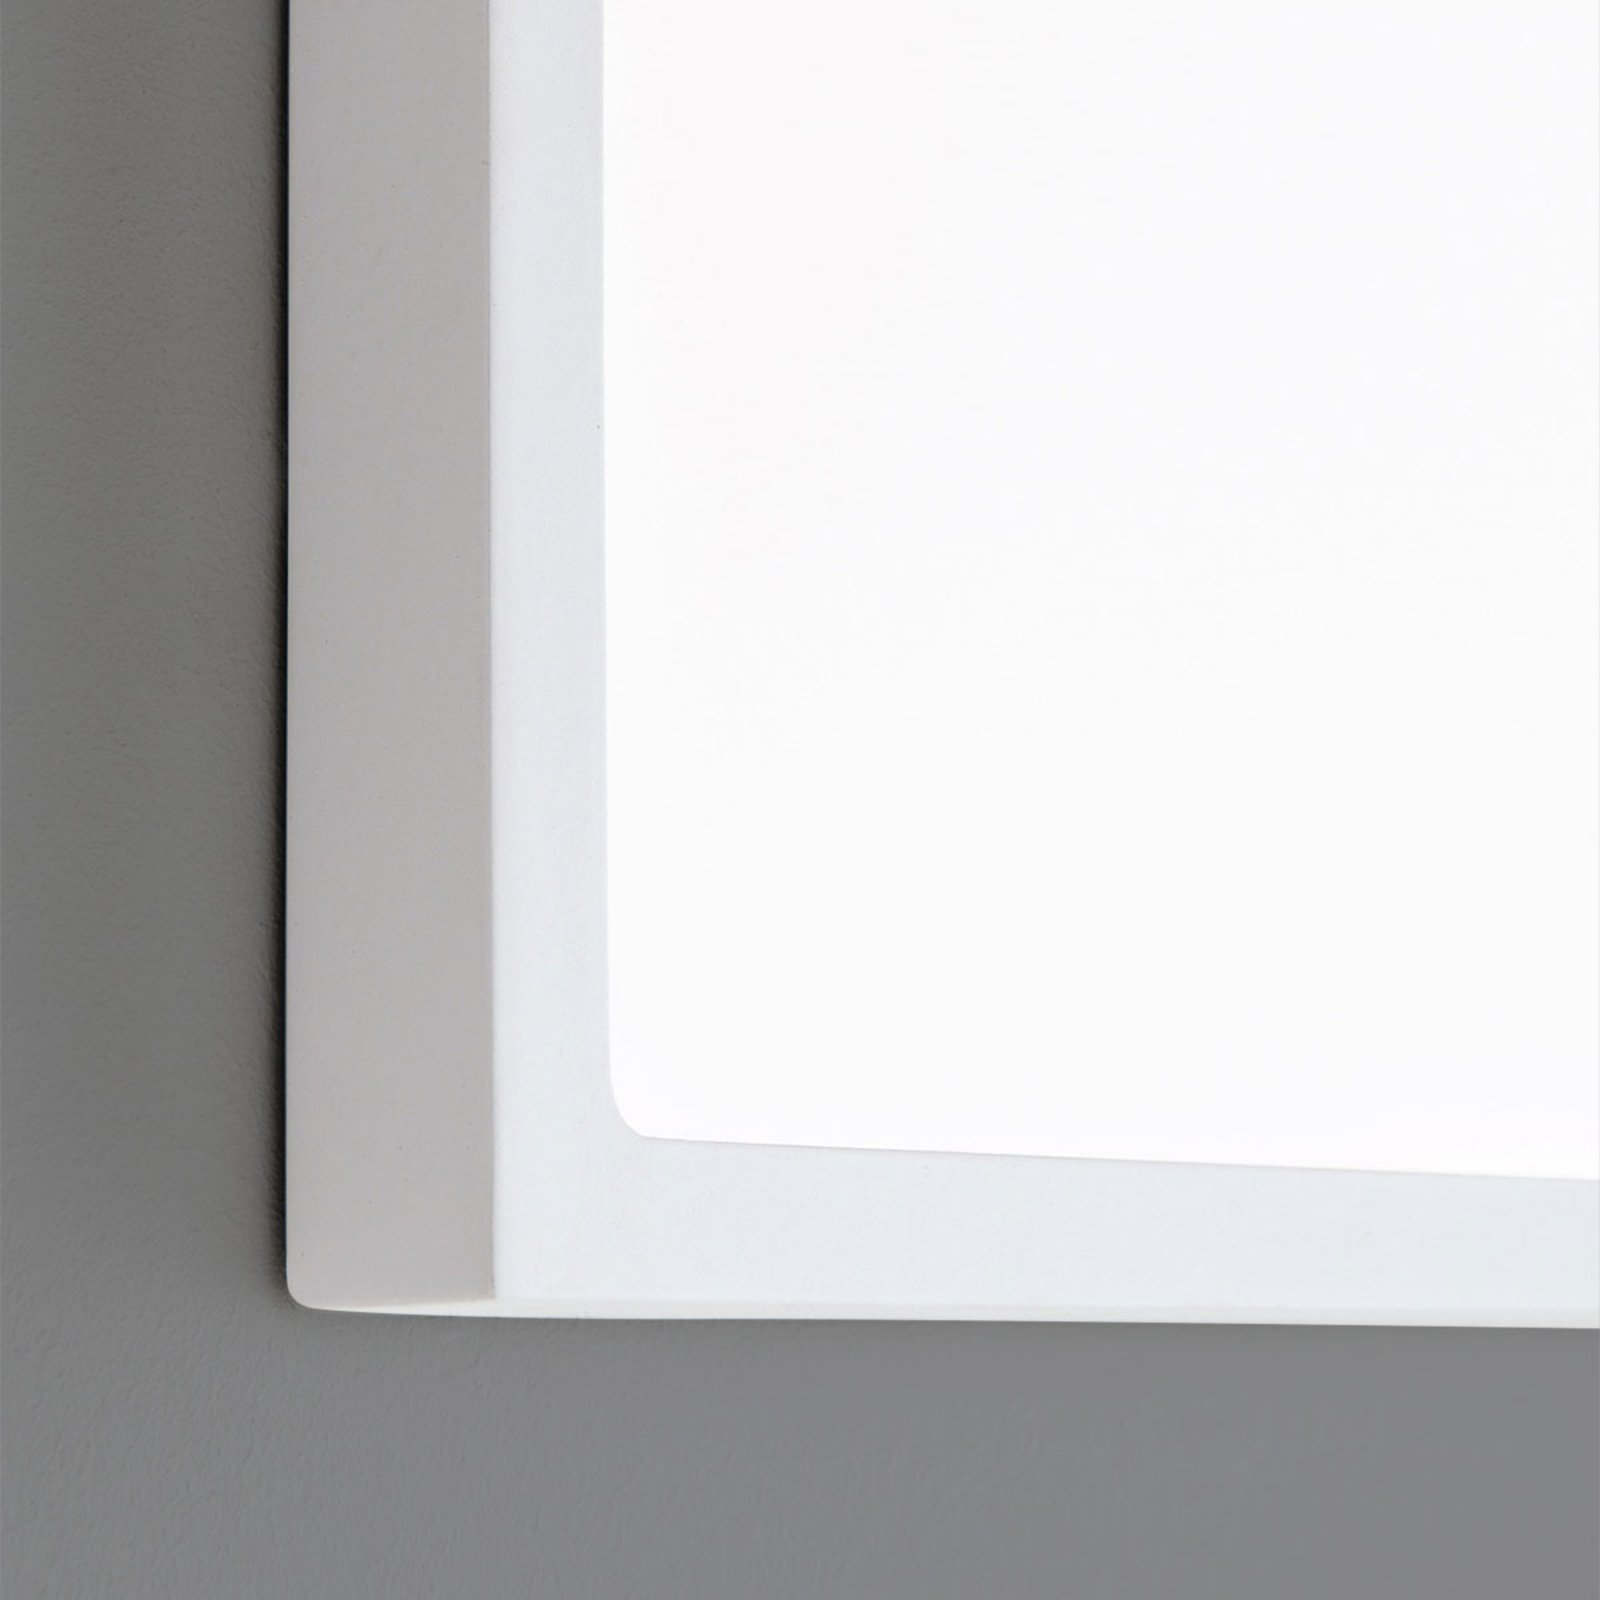 LED fali lámpa Vika, négyzet alakú, fehér, 30x30cm